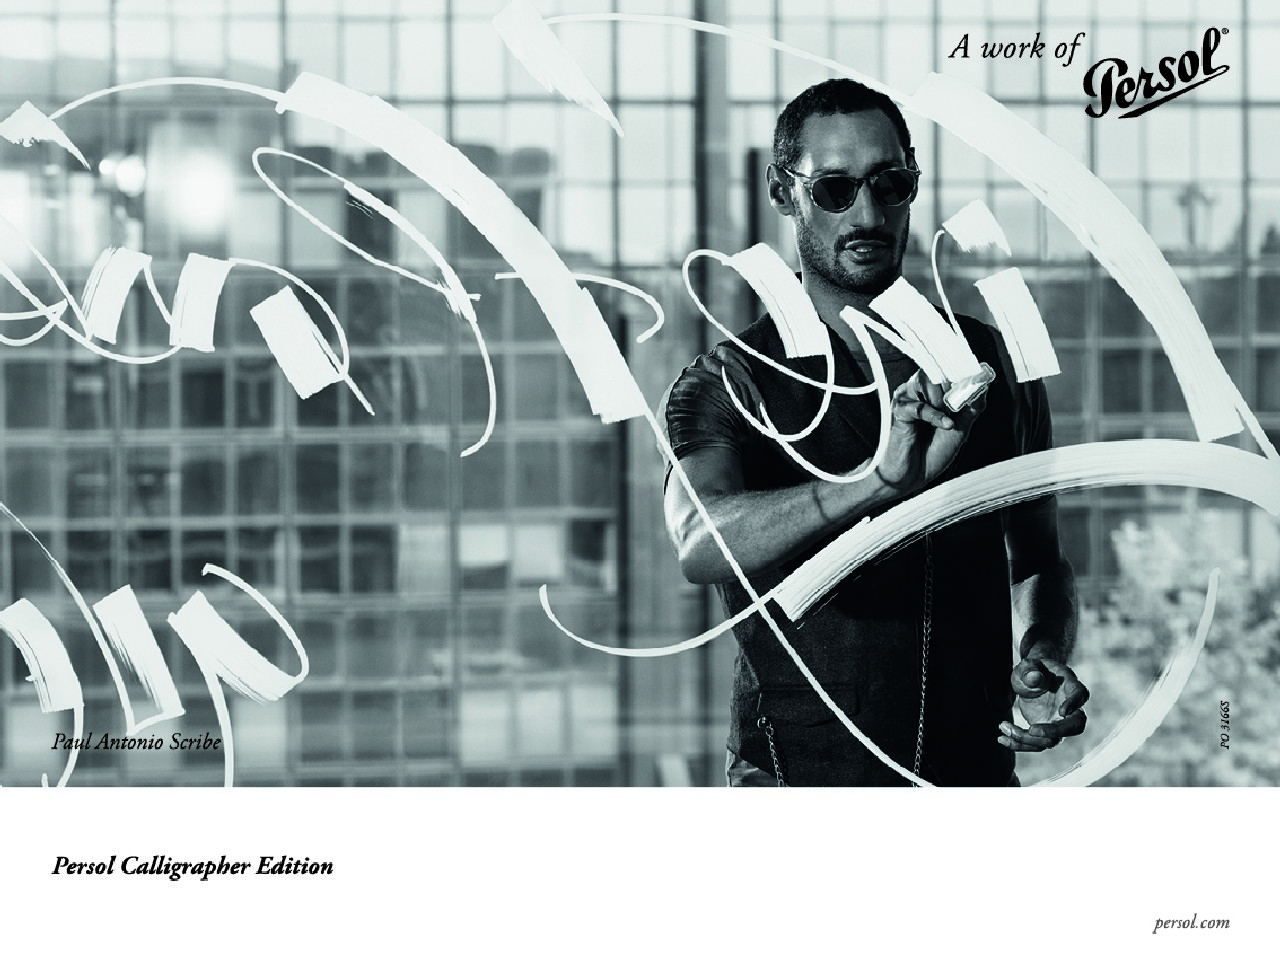 Persol occhiali Calligrapher Edition: Paul Antonio interpreta la nuova collezione e la campagna pubblicitaria